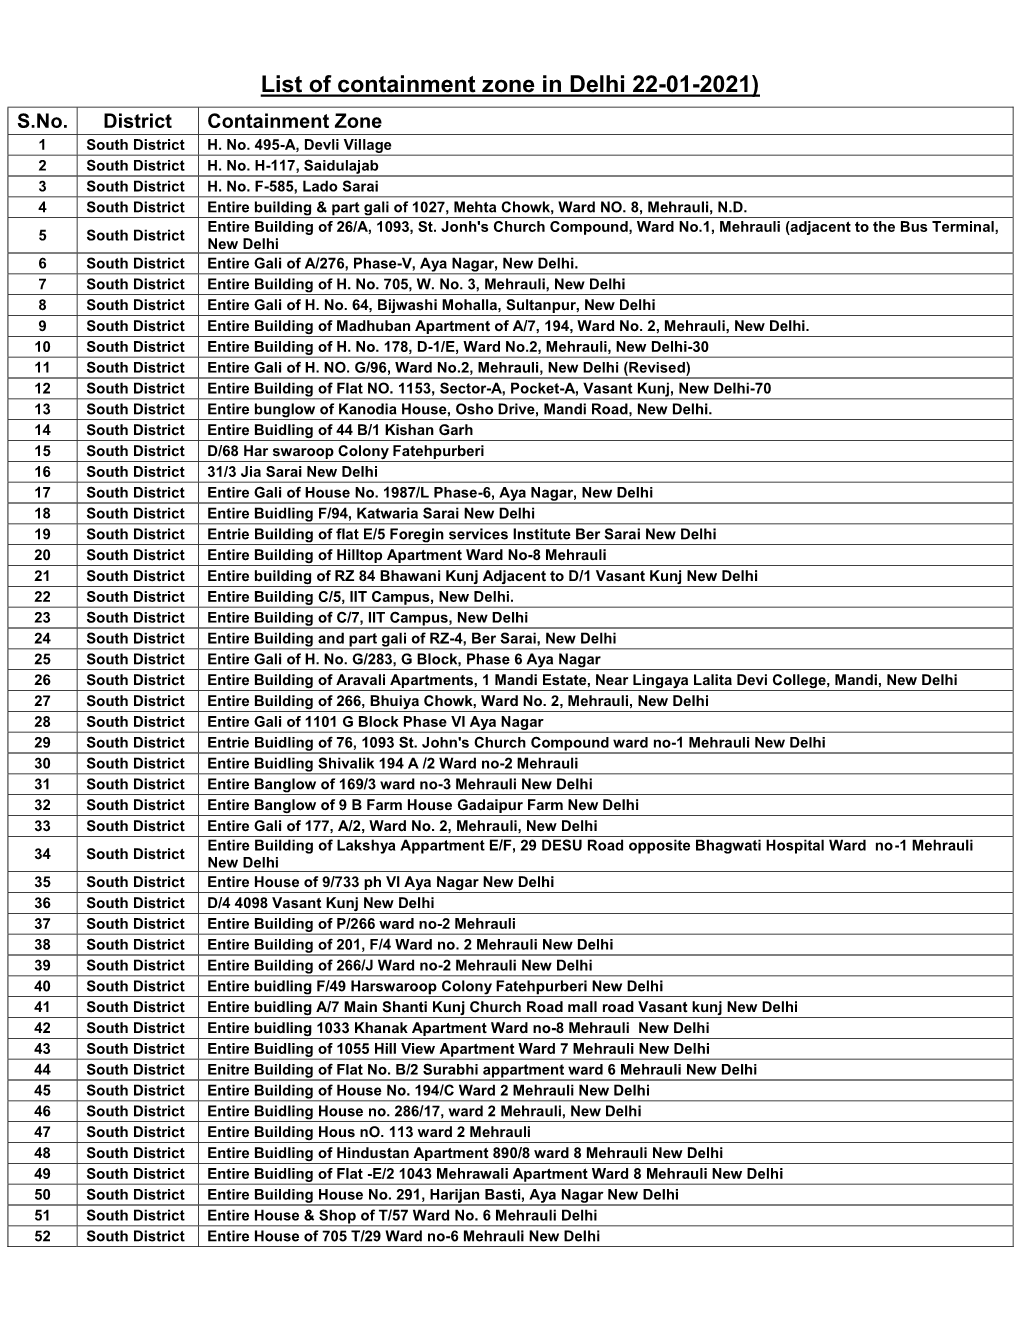 List of Containment Zone in Delhi 22-01-2021) S.No